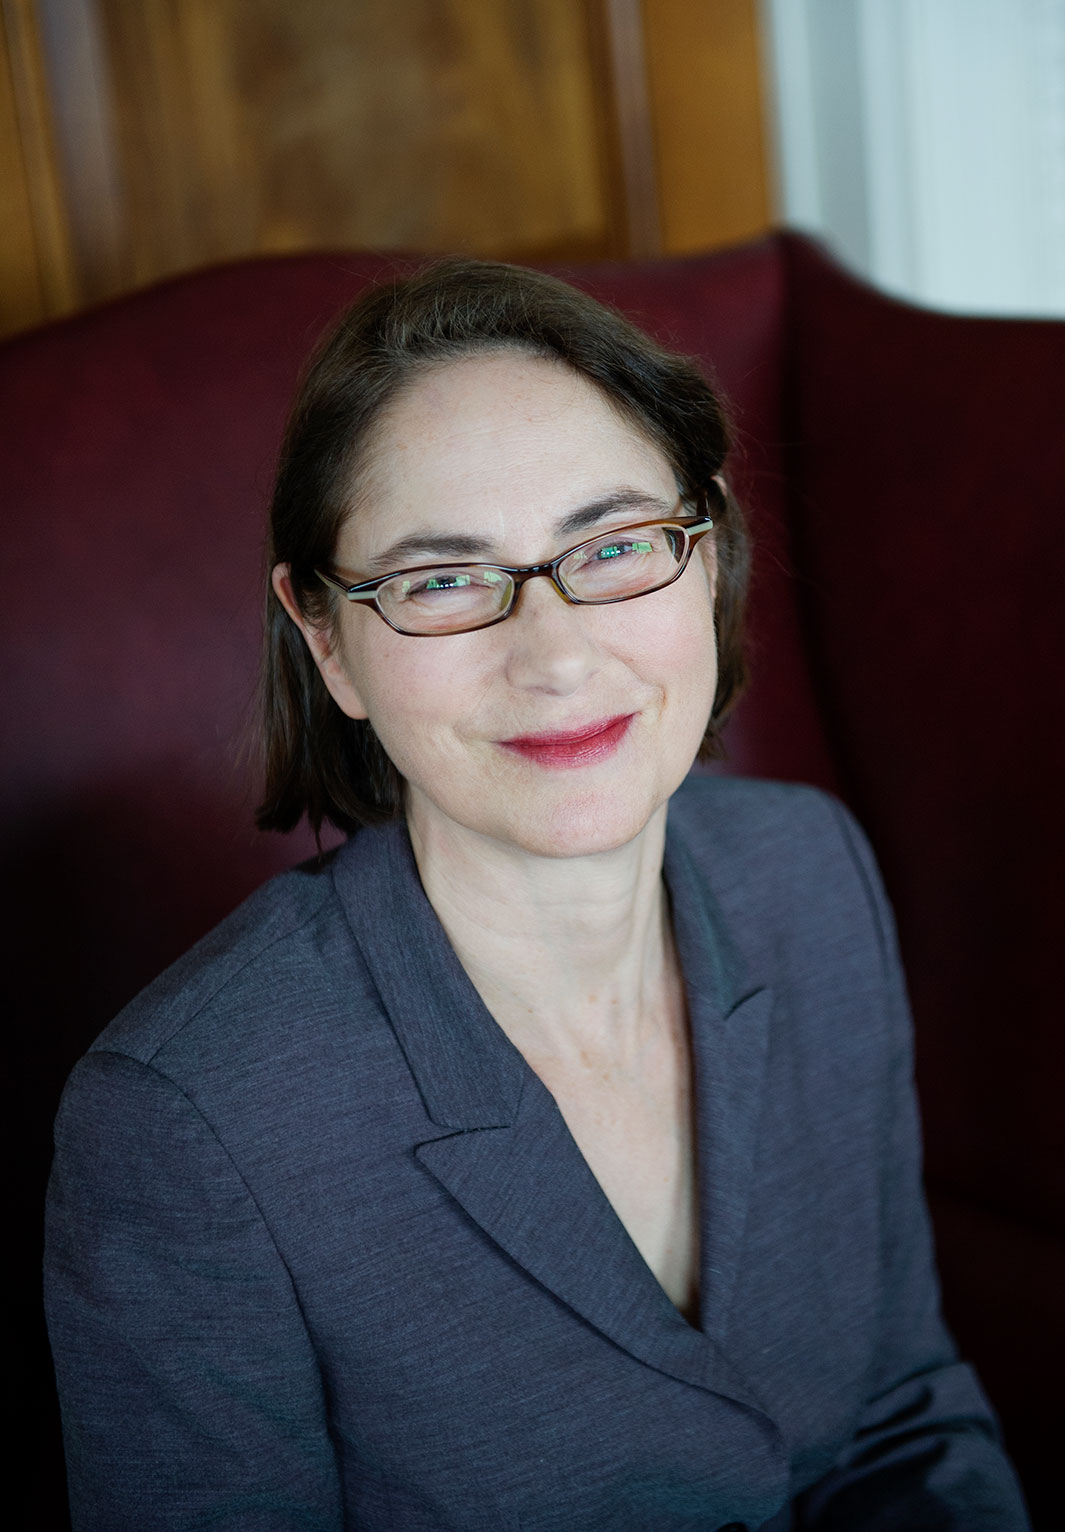 Office portrait of Karen Engelbourg, Senior Vice President for Development & Alumni Relations at Boston University